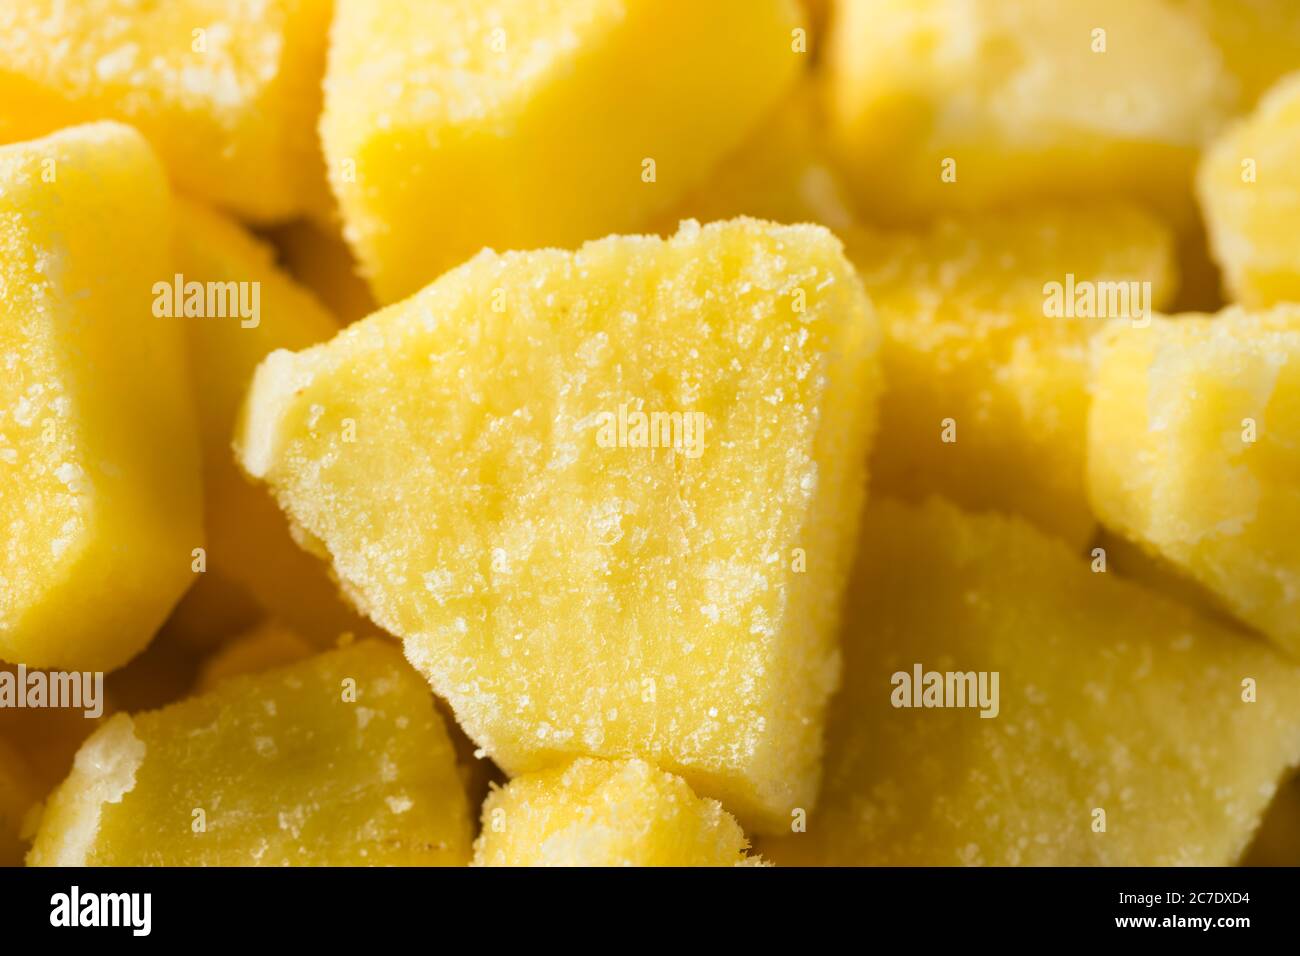 Tranches de ananas surgelés biologiques jaunes à manger Banque D'Images